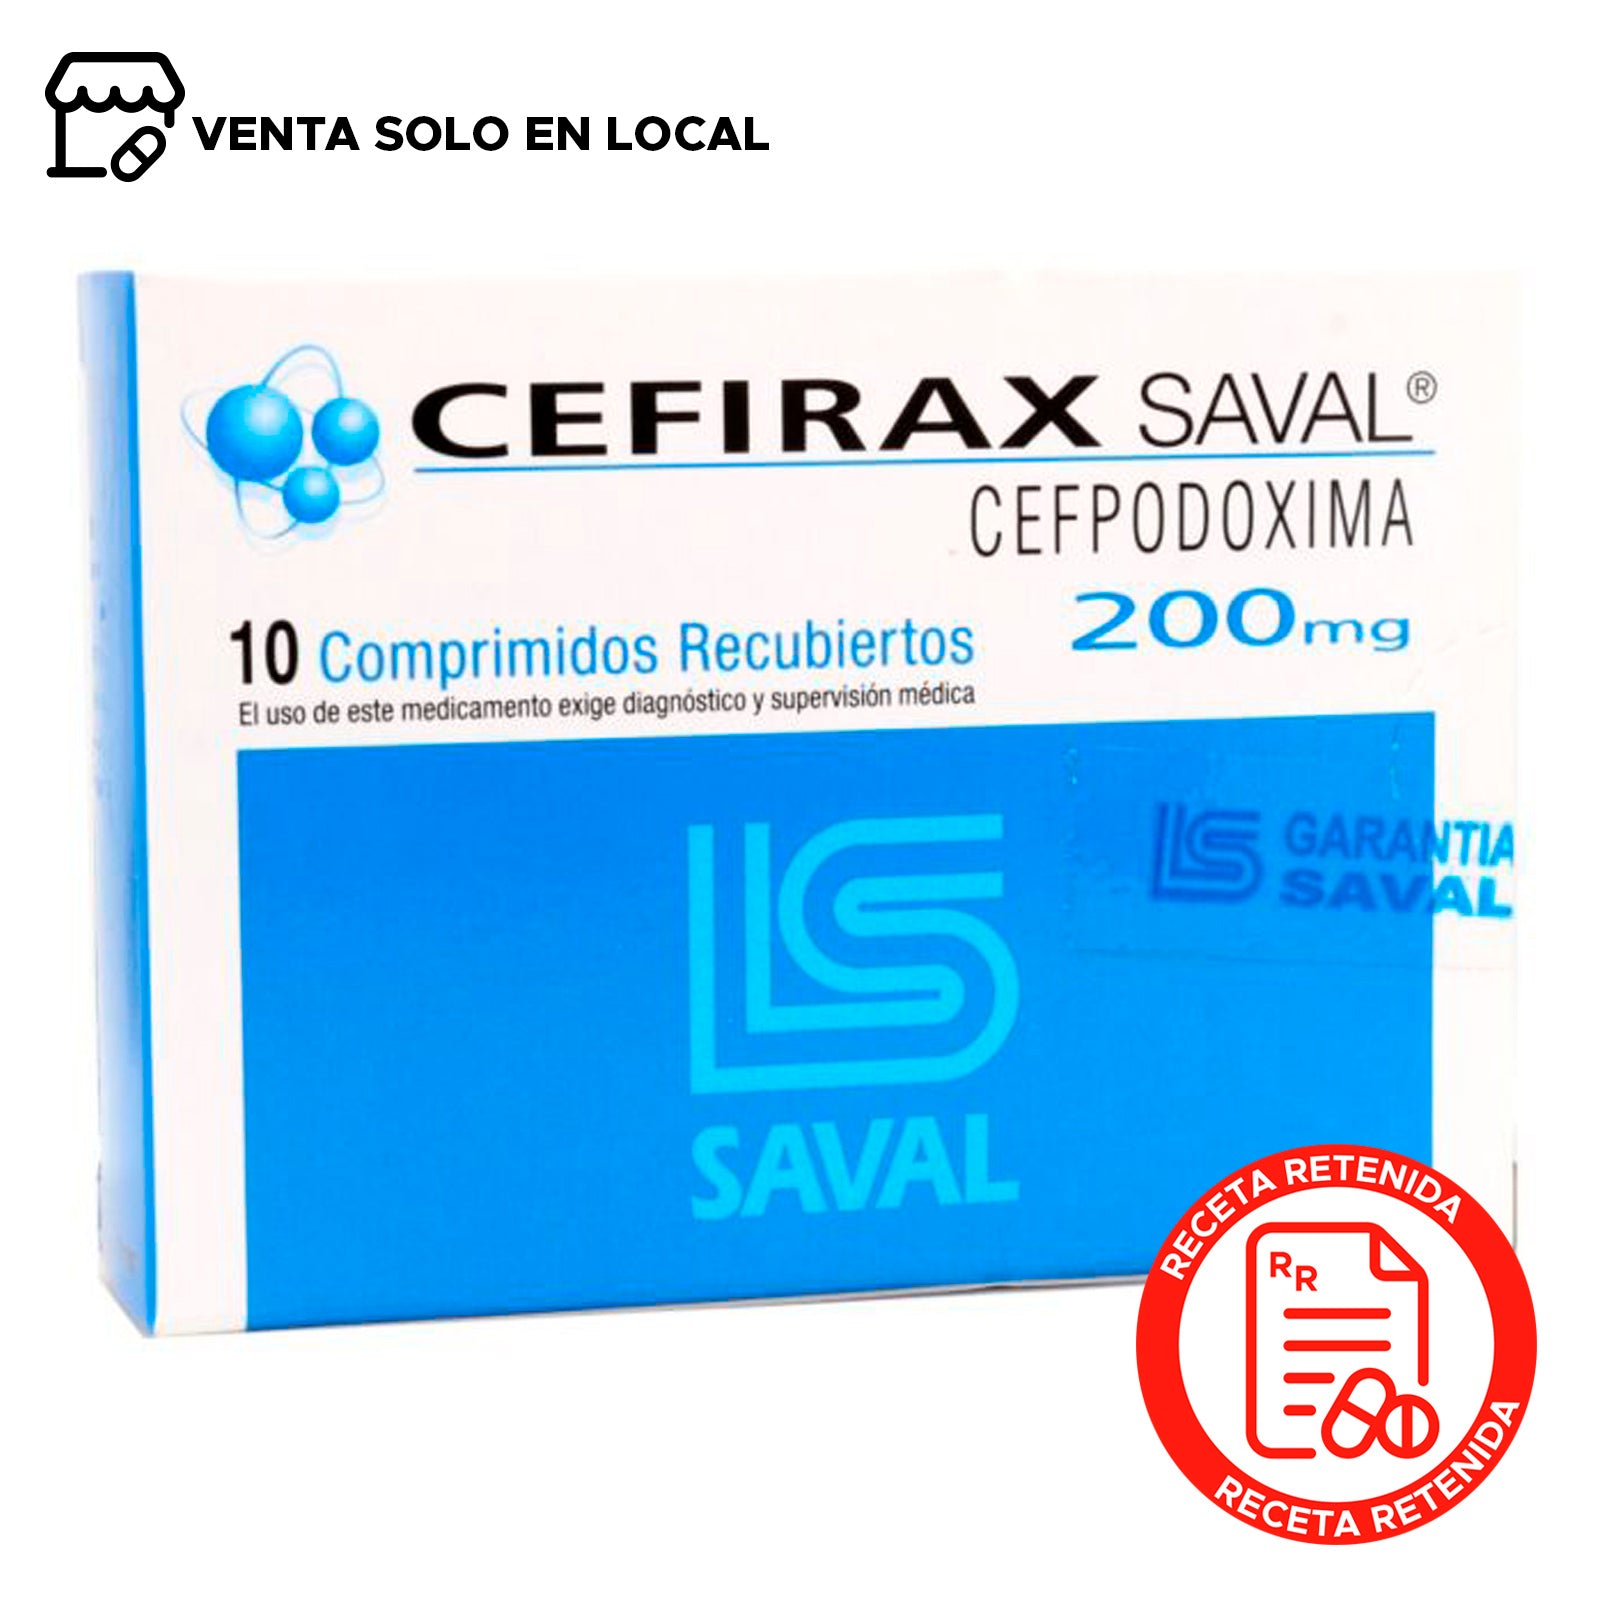 Cefirax Comprimidos Recubiertos 200mg